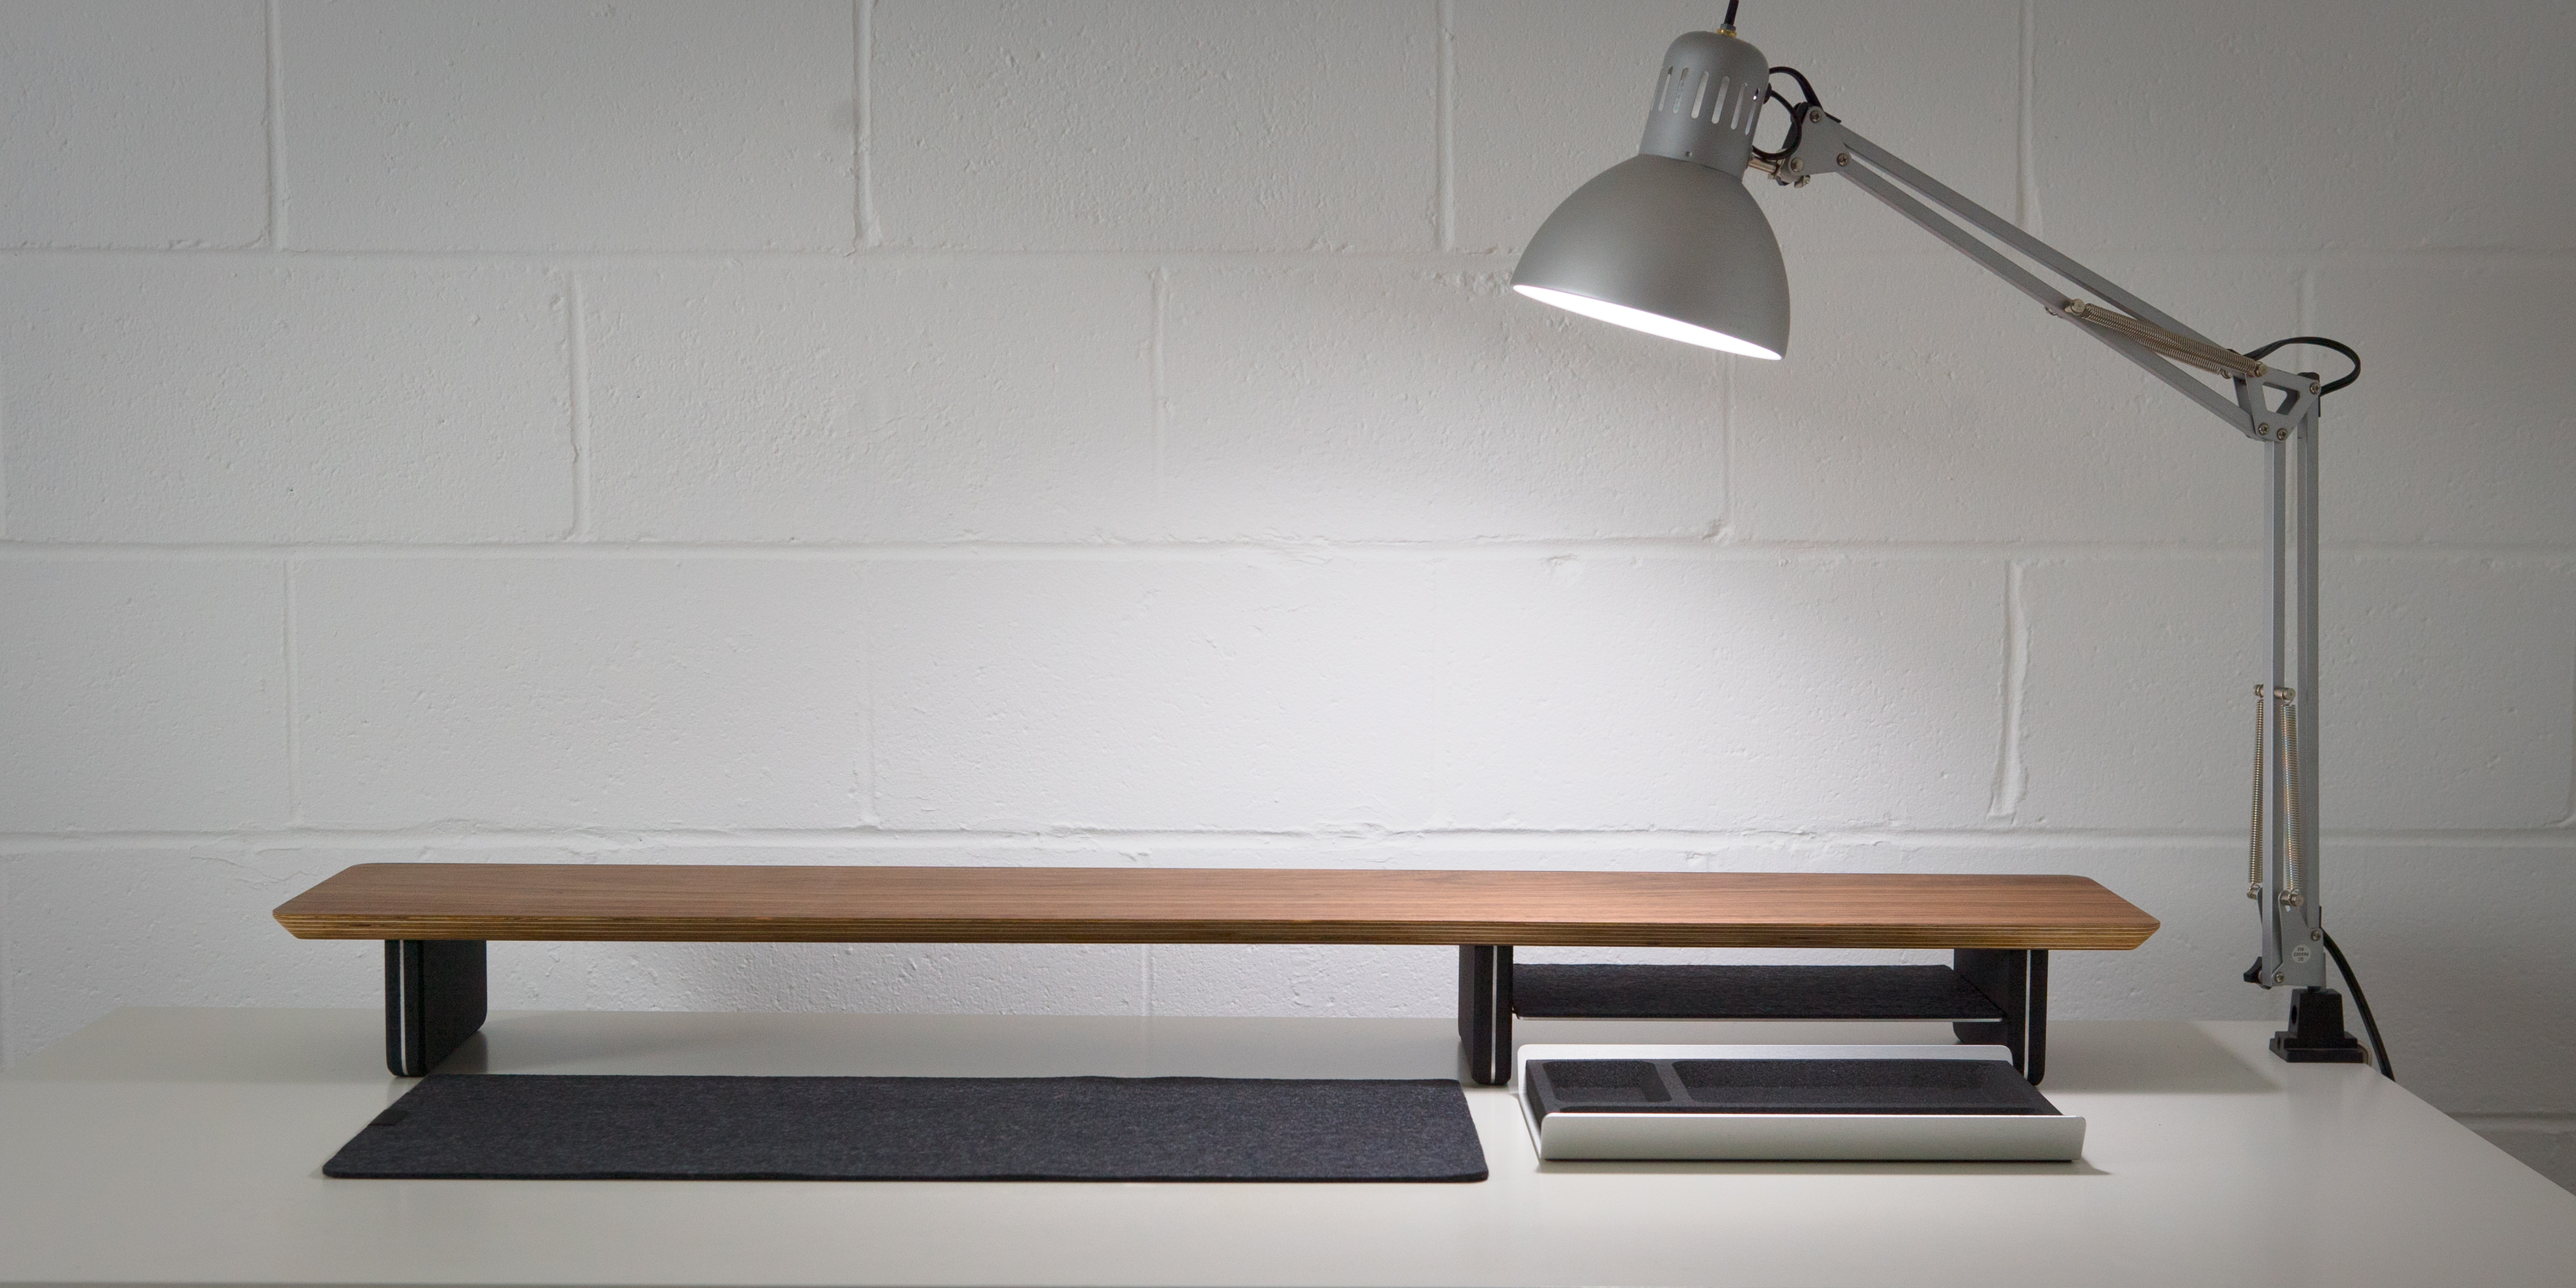 Grovemade Desk Shelf Review: Elevate your desk w/ a shelf and Qi pad